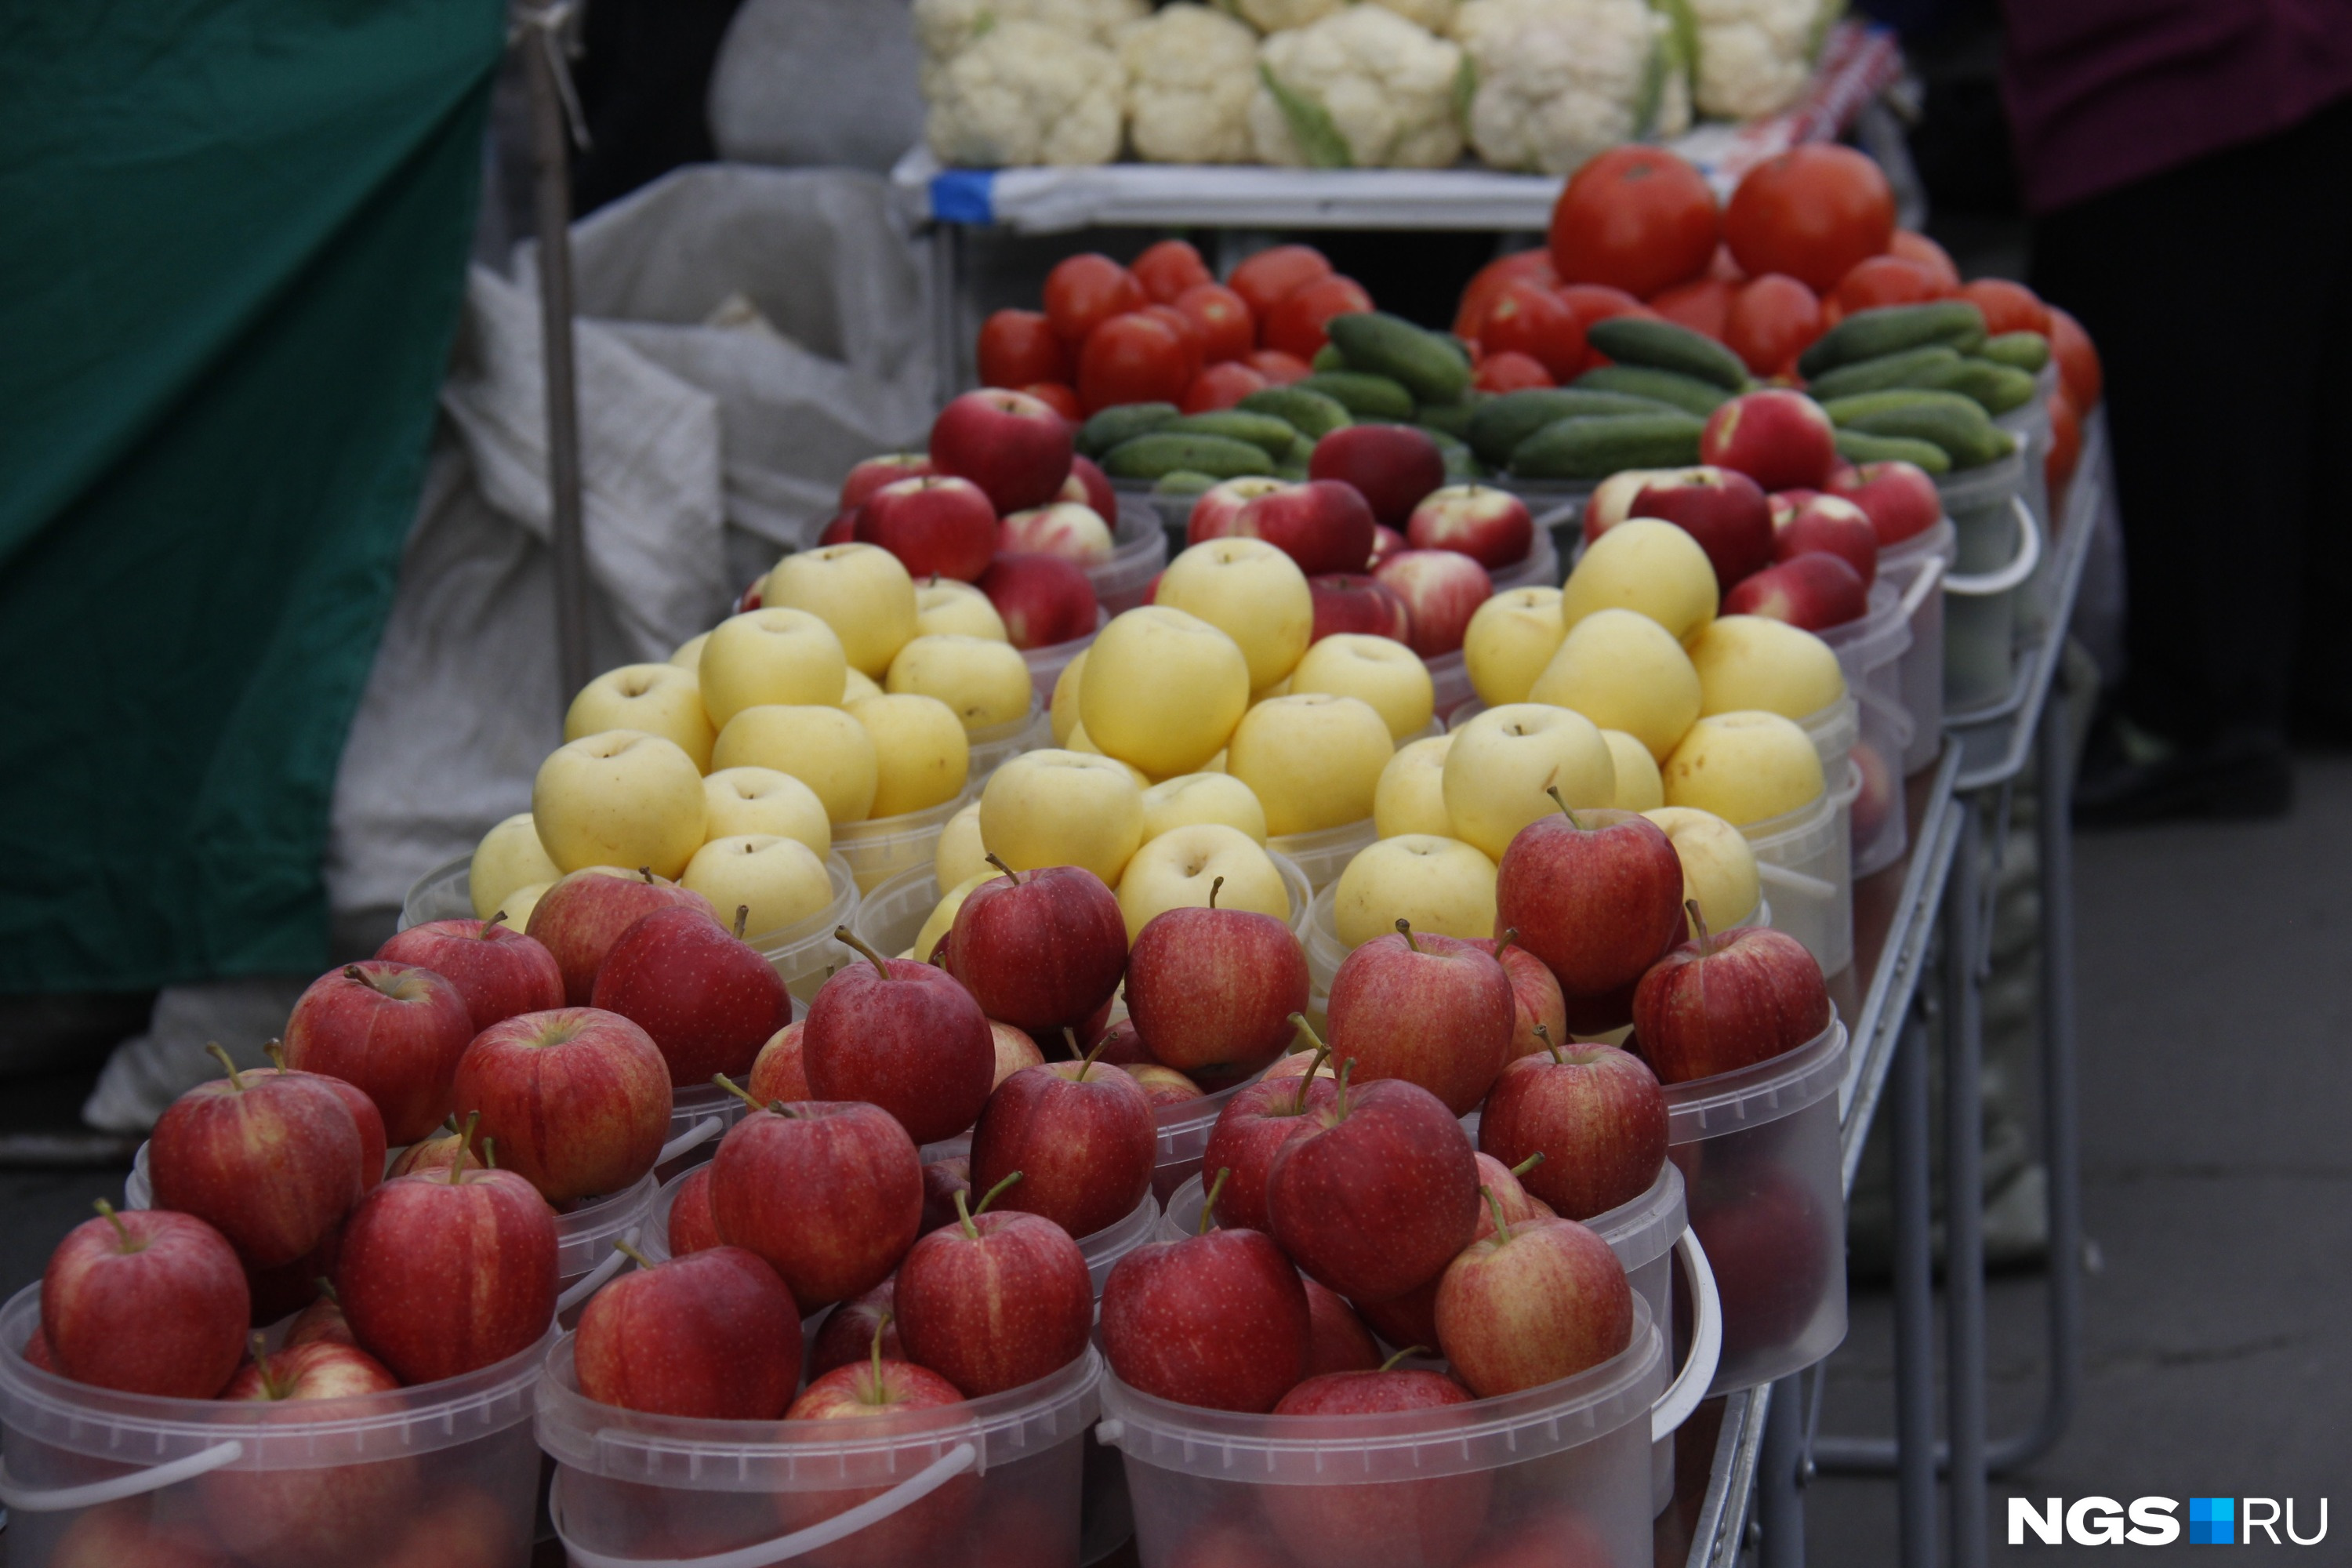 Яблоки почти у всех торговцев стоят 200 рублей